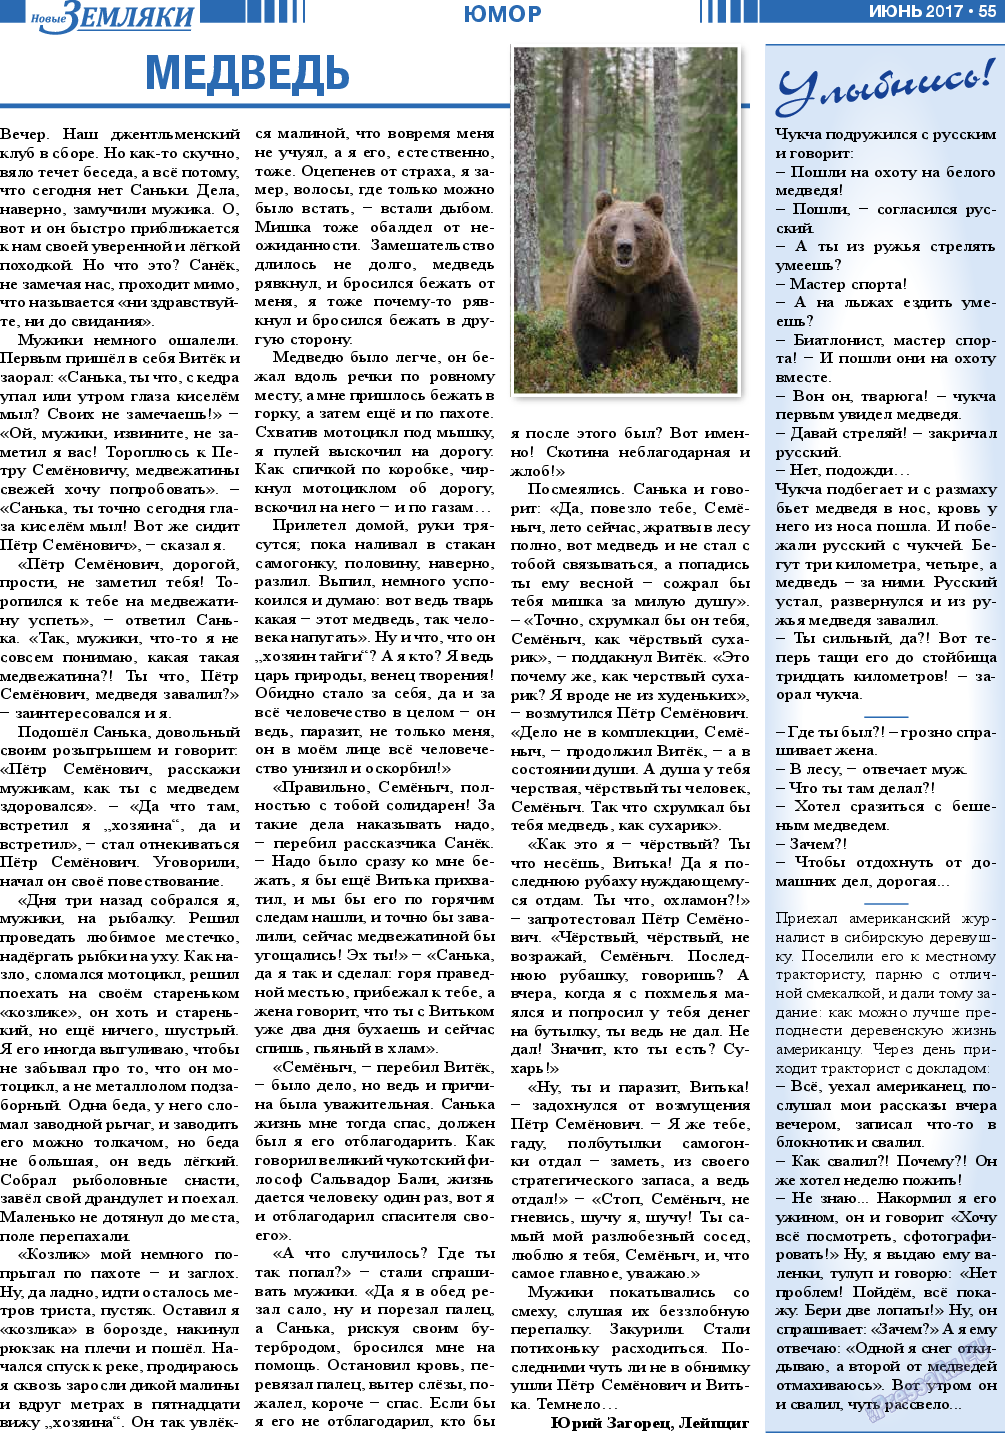 Новые Земляки (газета). 2017 год, номер 6, стр. 55